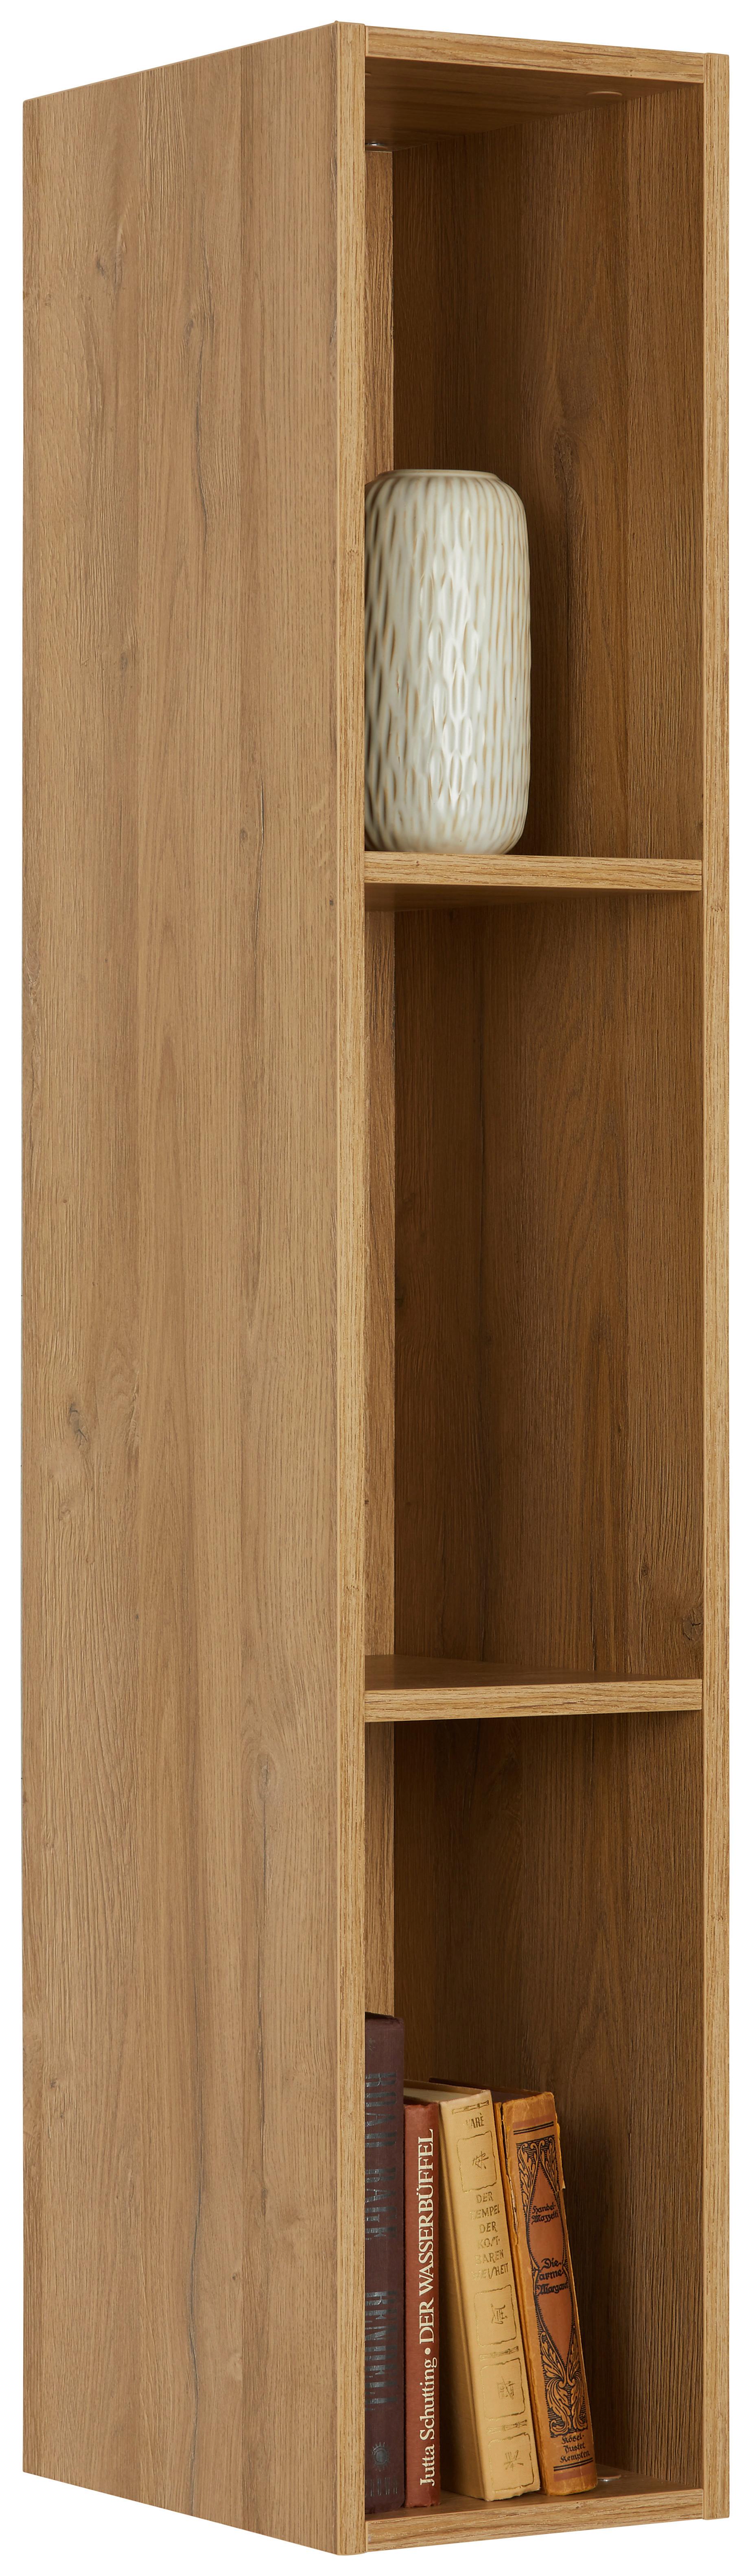 Nástěnný Regál Max Box - barvy dubu, Moderní, kompozitní dřevo (120/22/32cm) - Premium Living